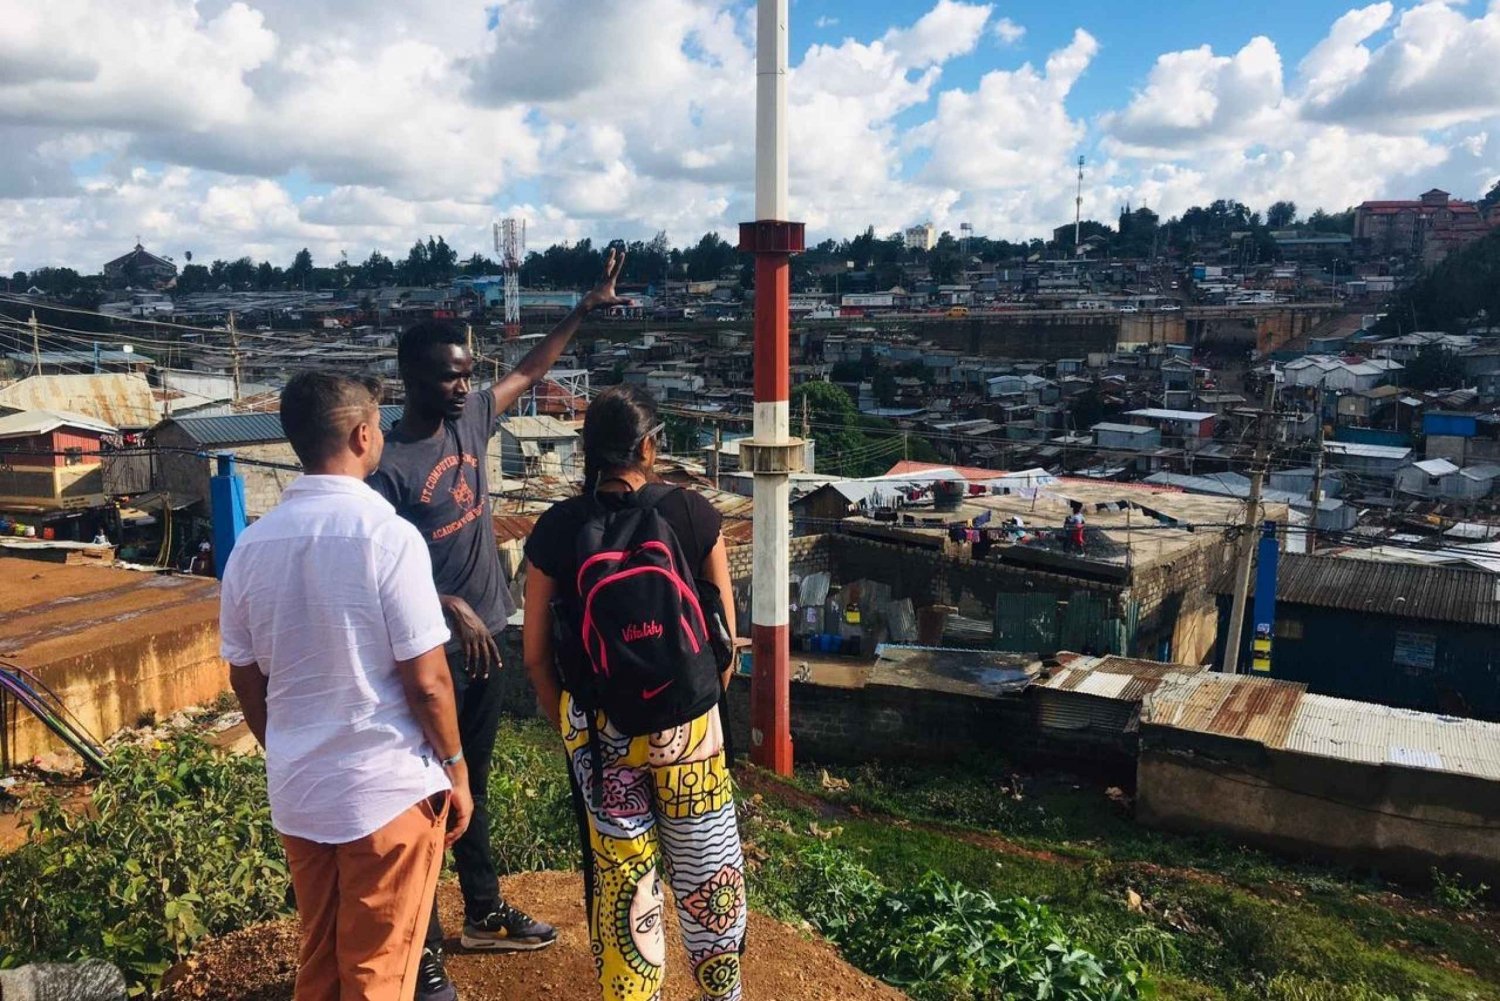 passeio pela vibrante favela de Kibera